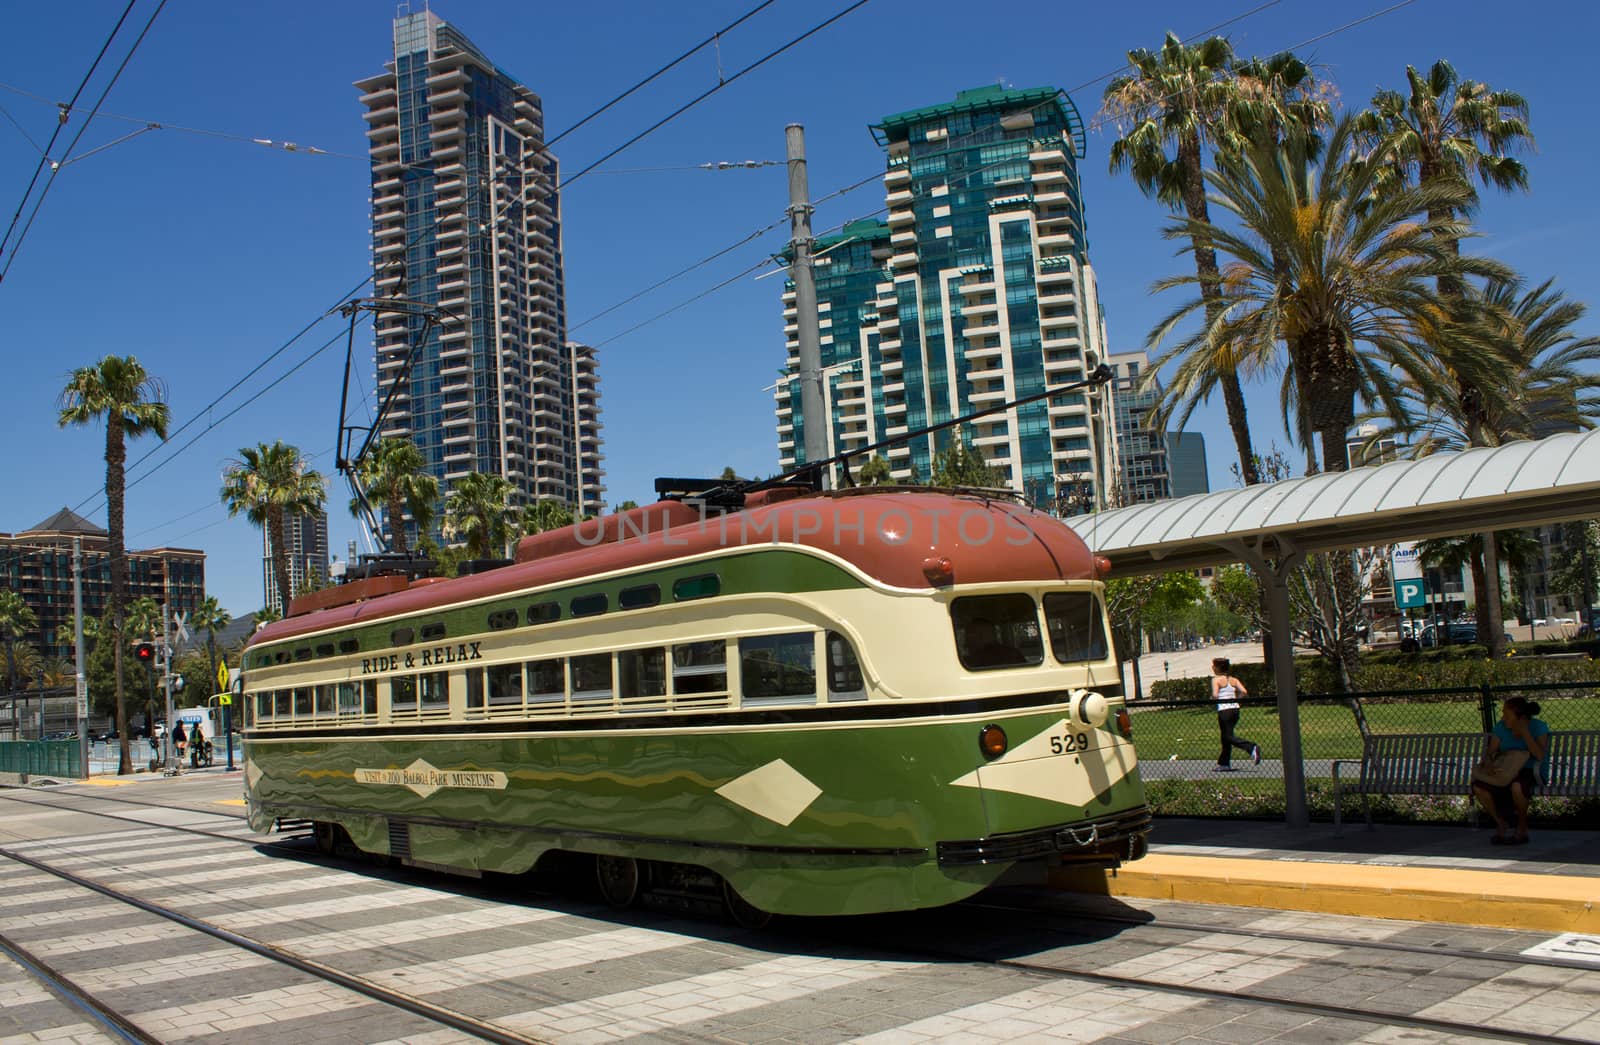 Trolley car in San Diego in California